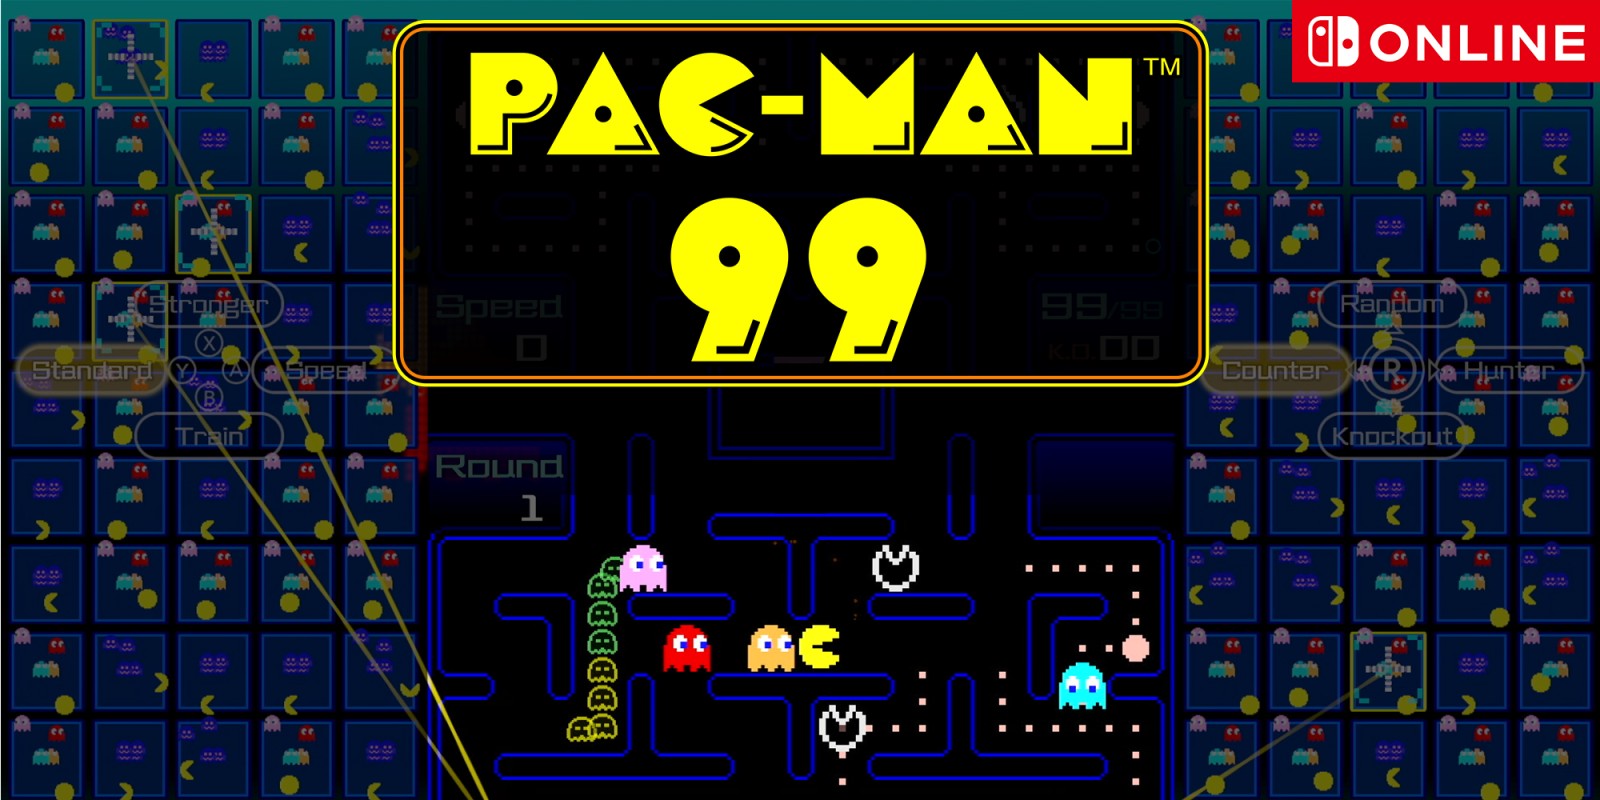 Pac-Man revient sur Nintendo Switch dans un battle royale à 99 joueurs